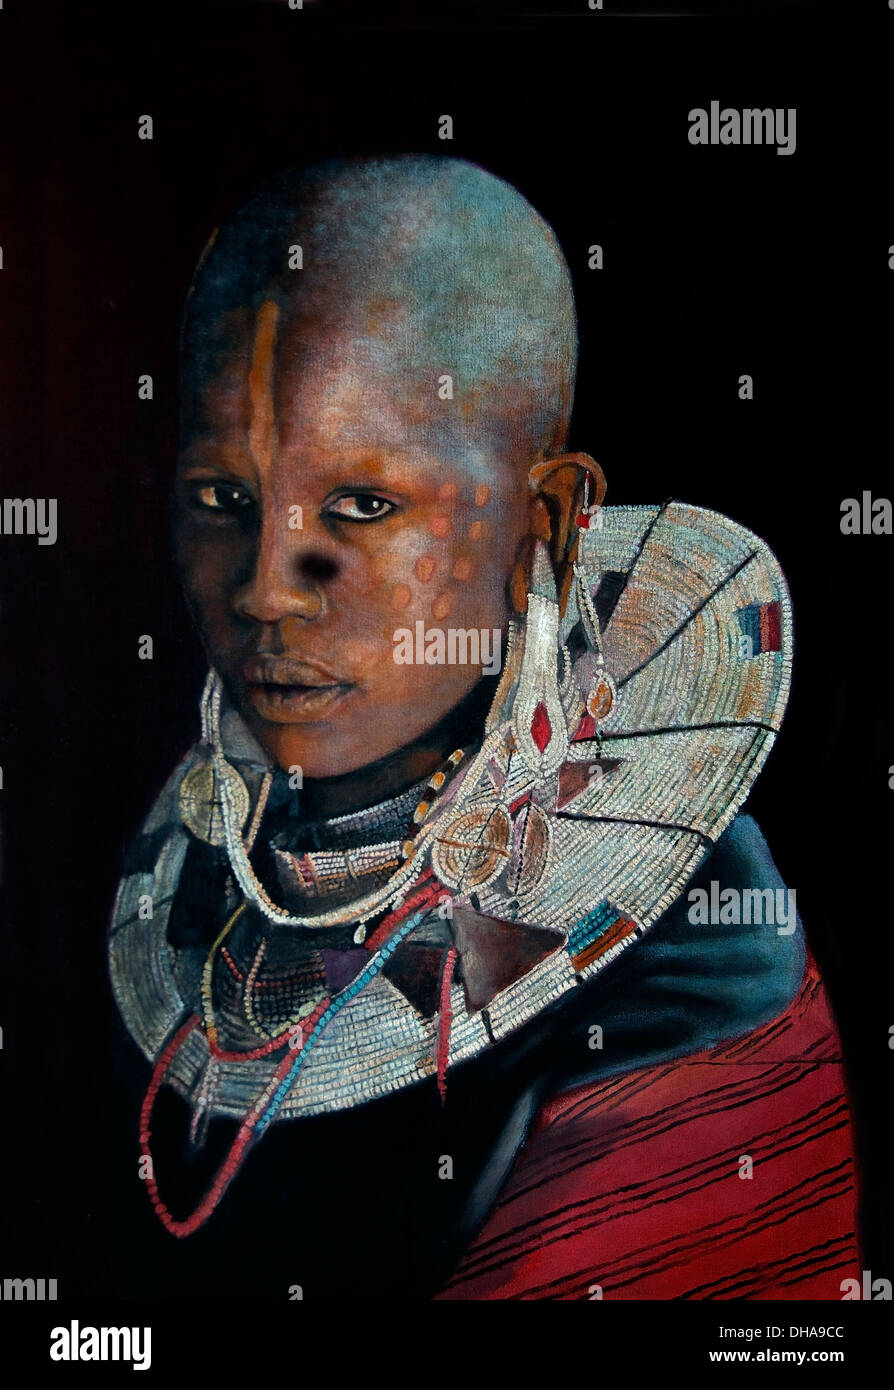 Galería de Arte Moderno cuadro mujer africana África Kenia Tanzania Foto de stock